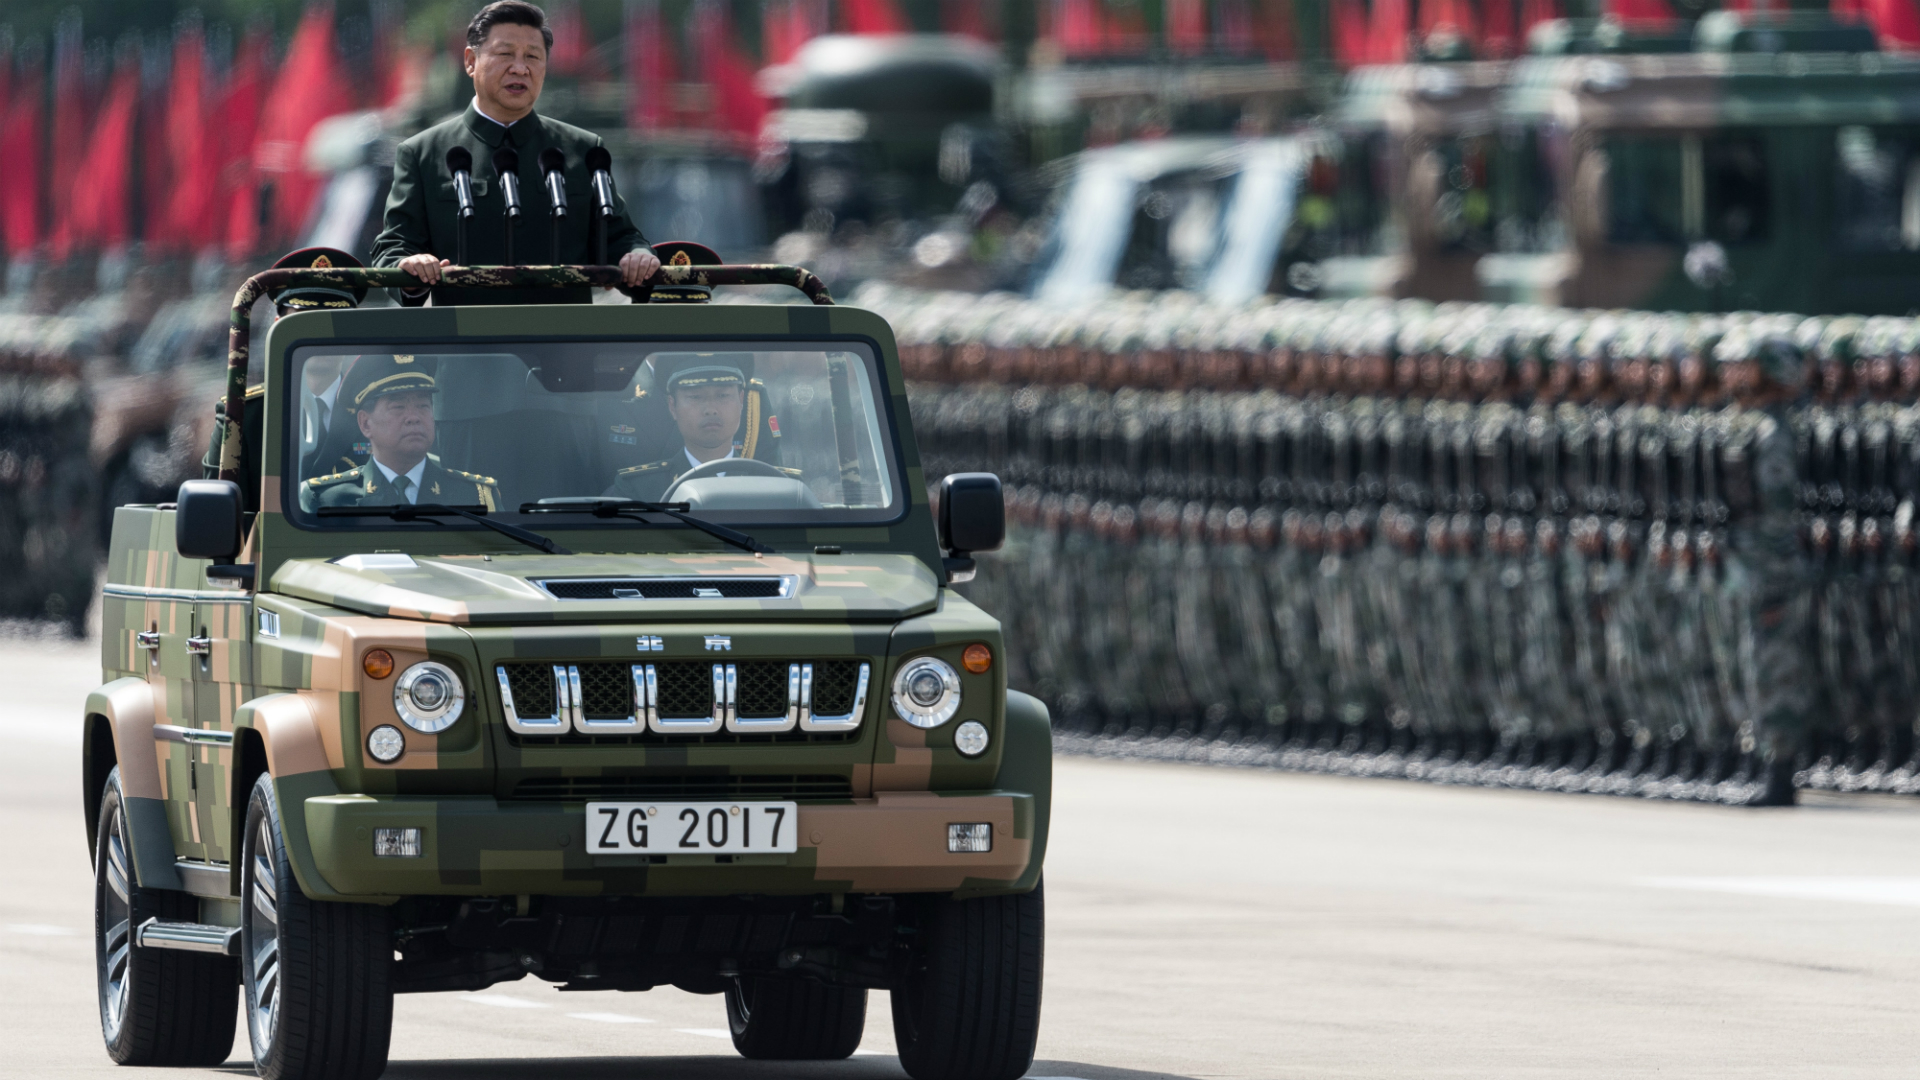 https://elpulso.hn/wp-content/uploads/2019/01/desfile-militar-china.jpg